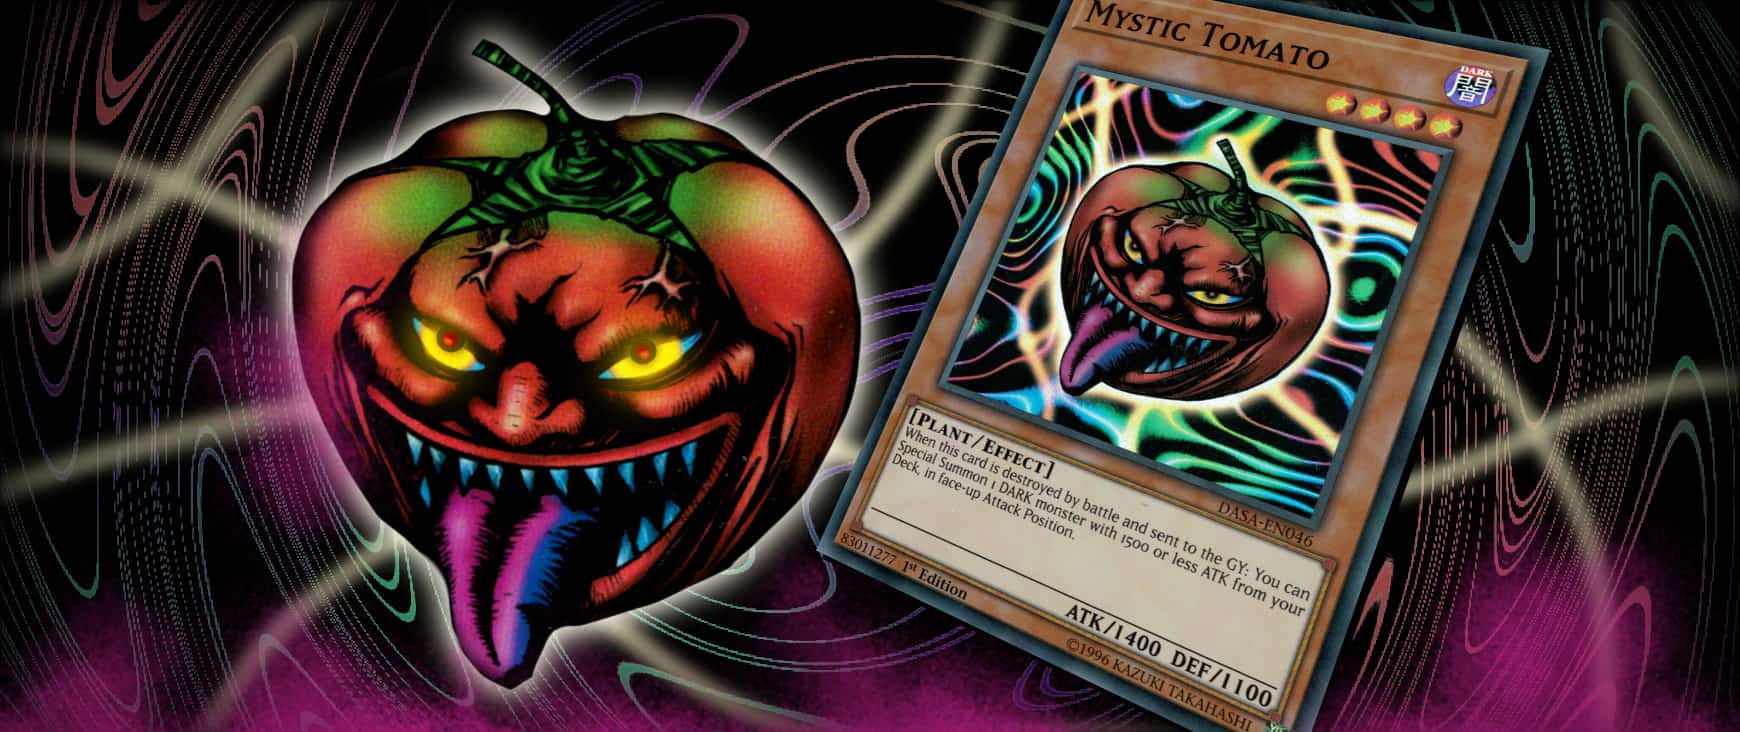 Mystic Tomato Yu-Gi-Oh! card